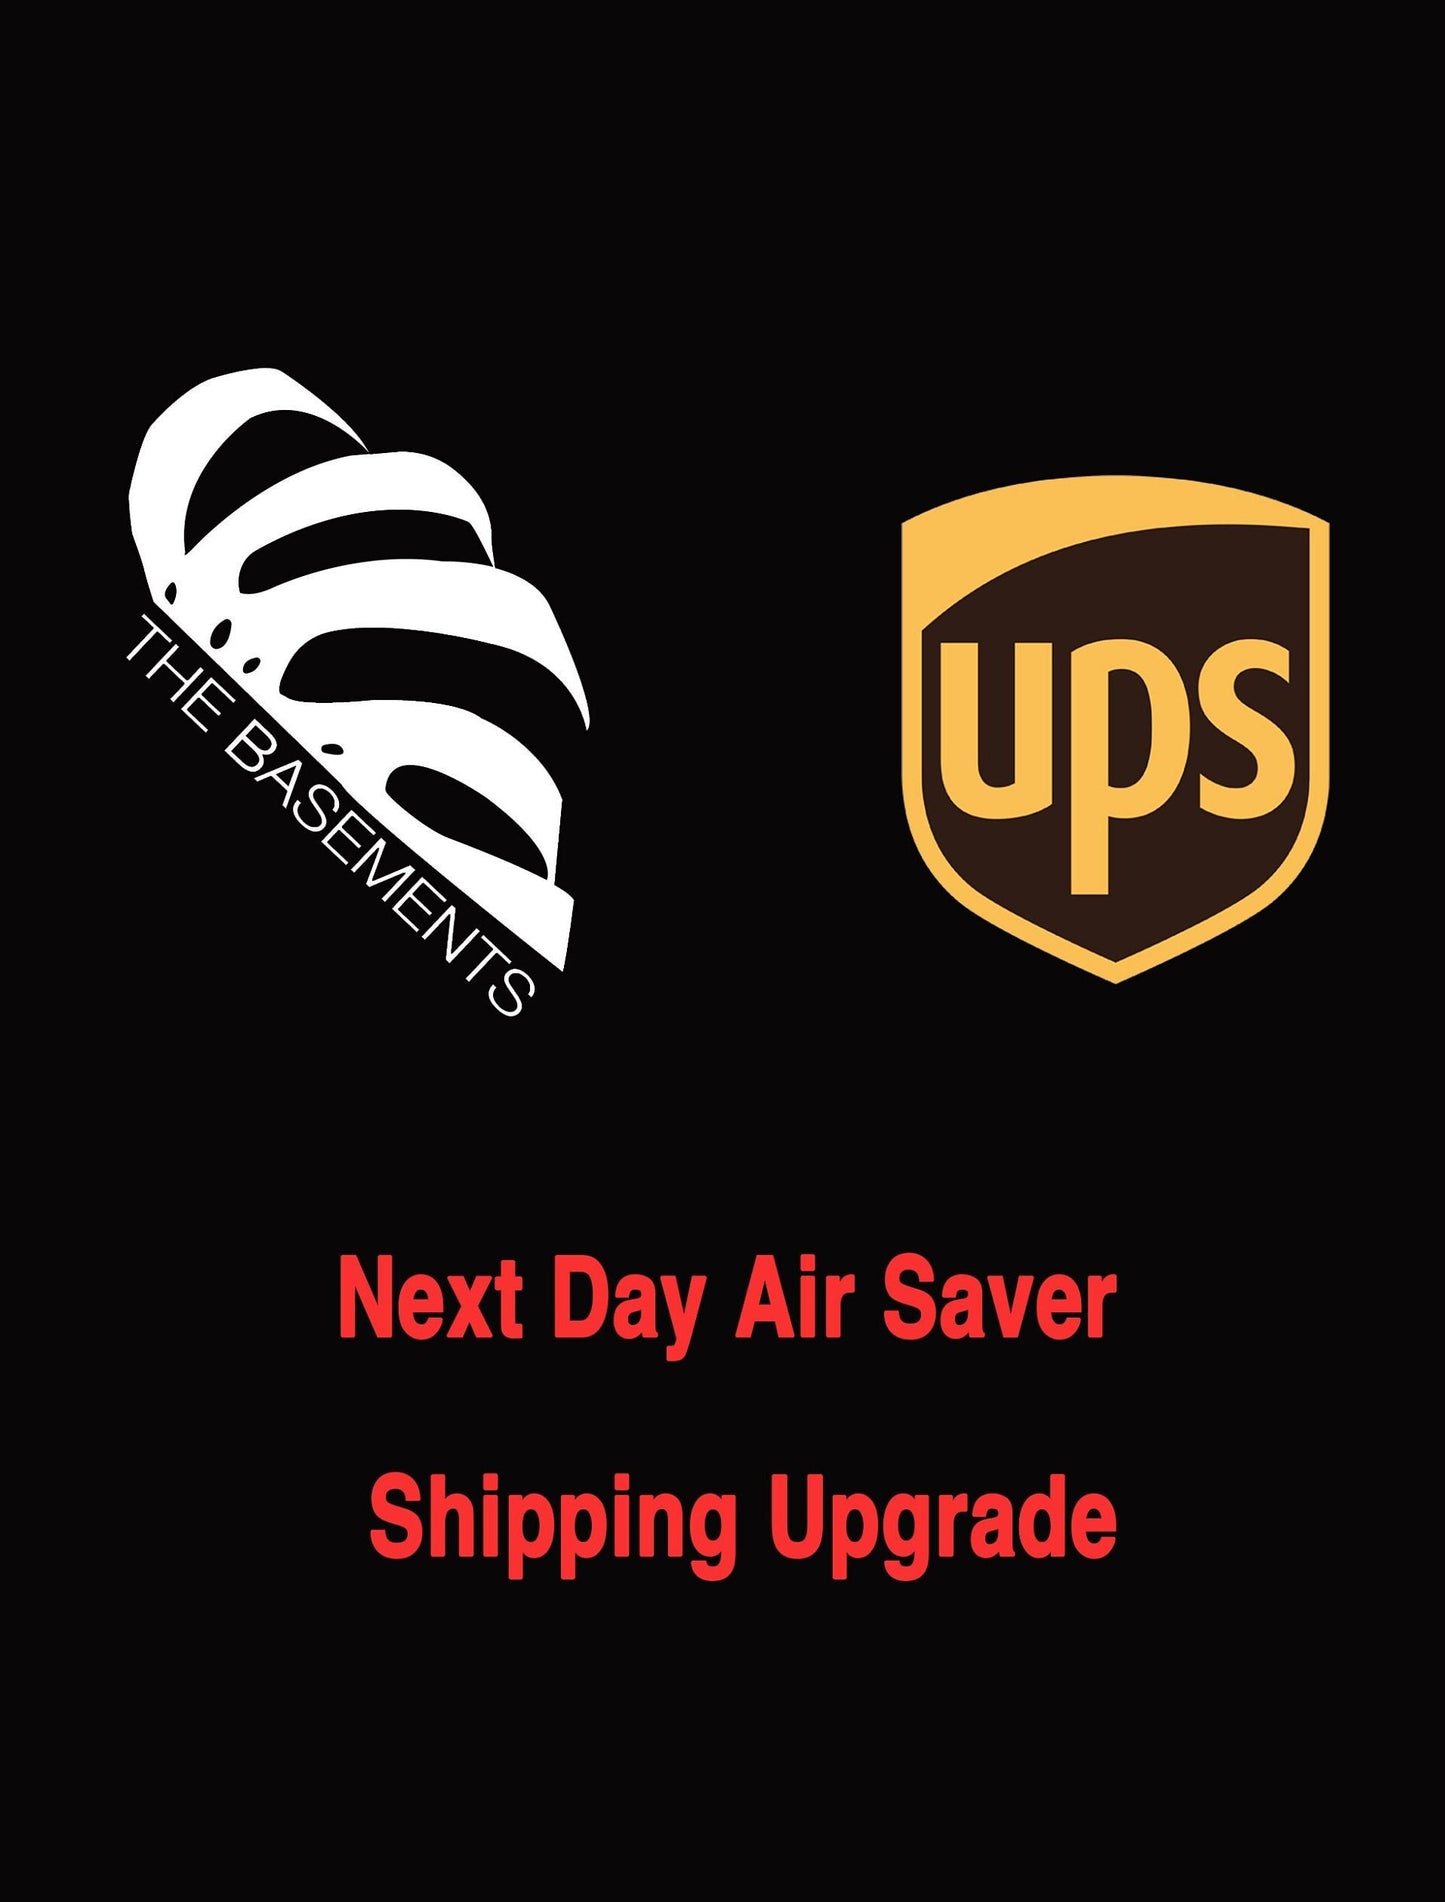 UPS Next Day Air Saver Shipping Upgrade The Basements US